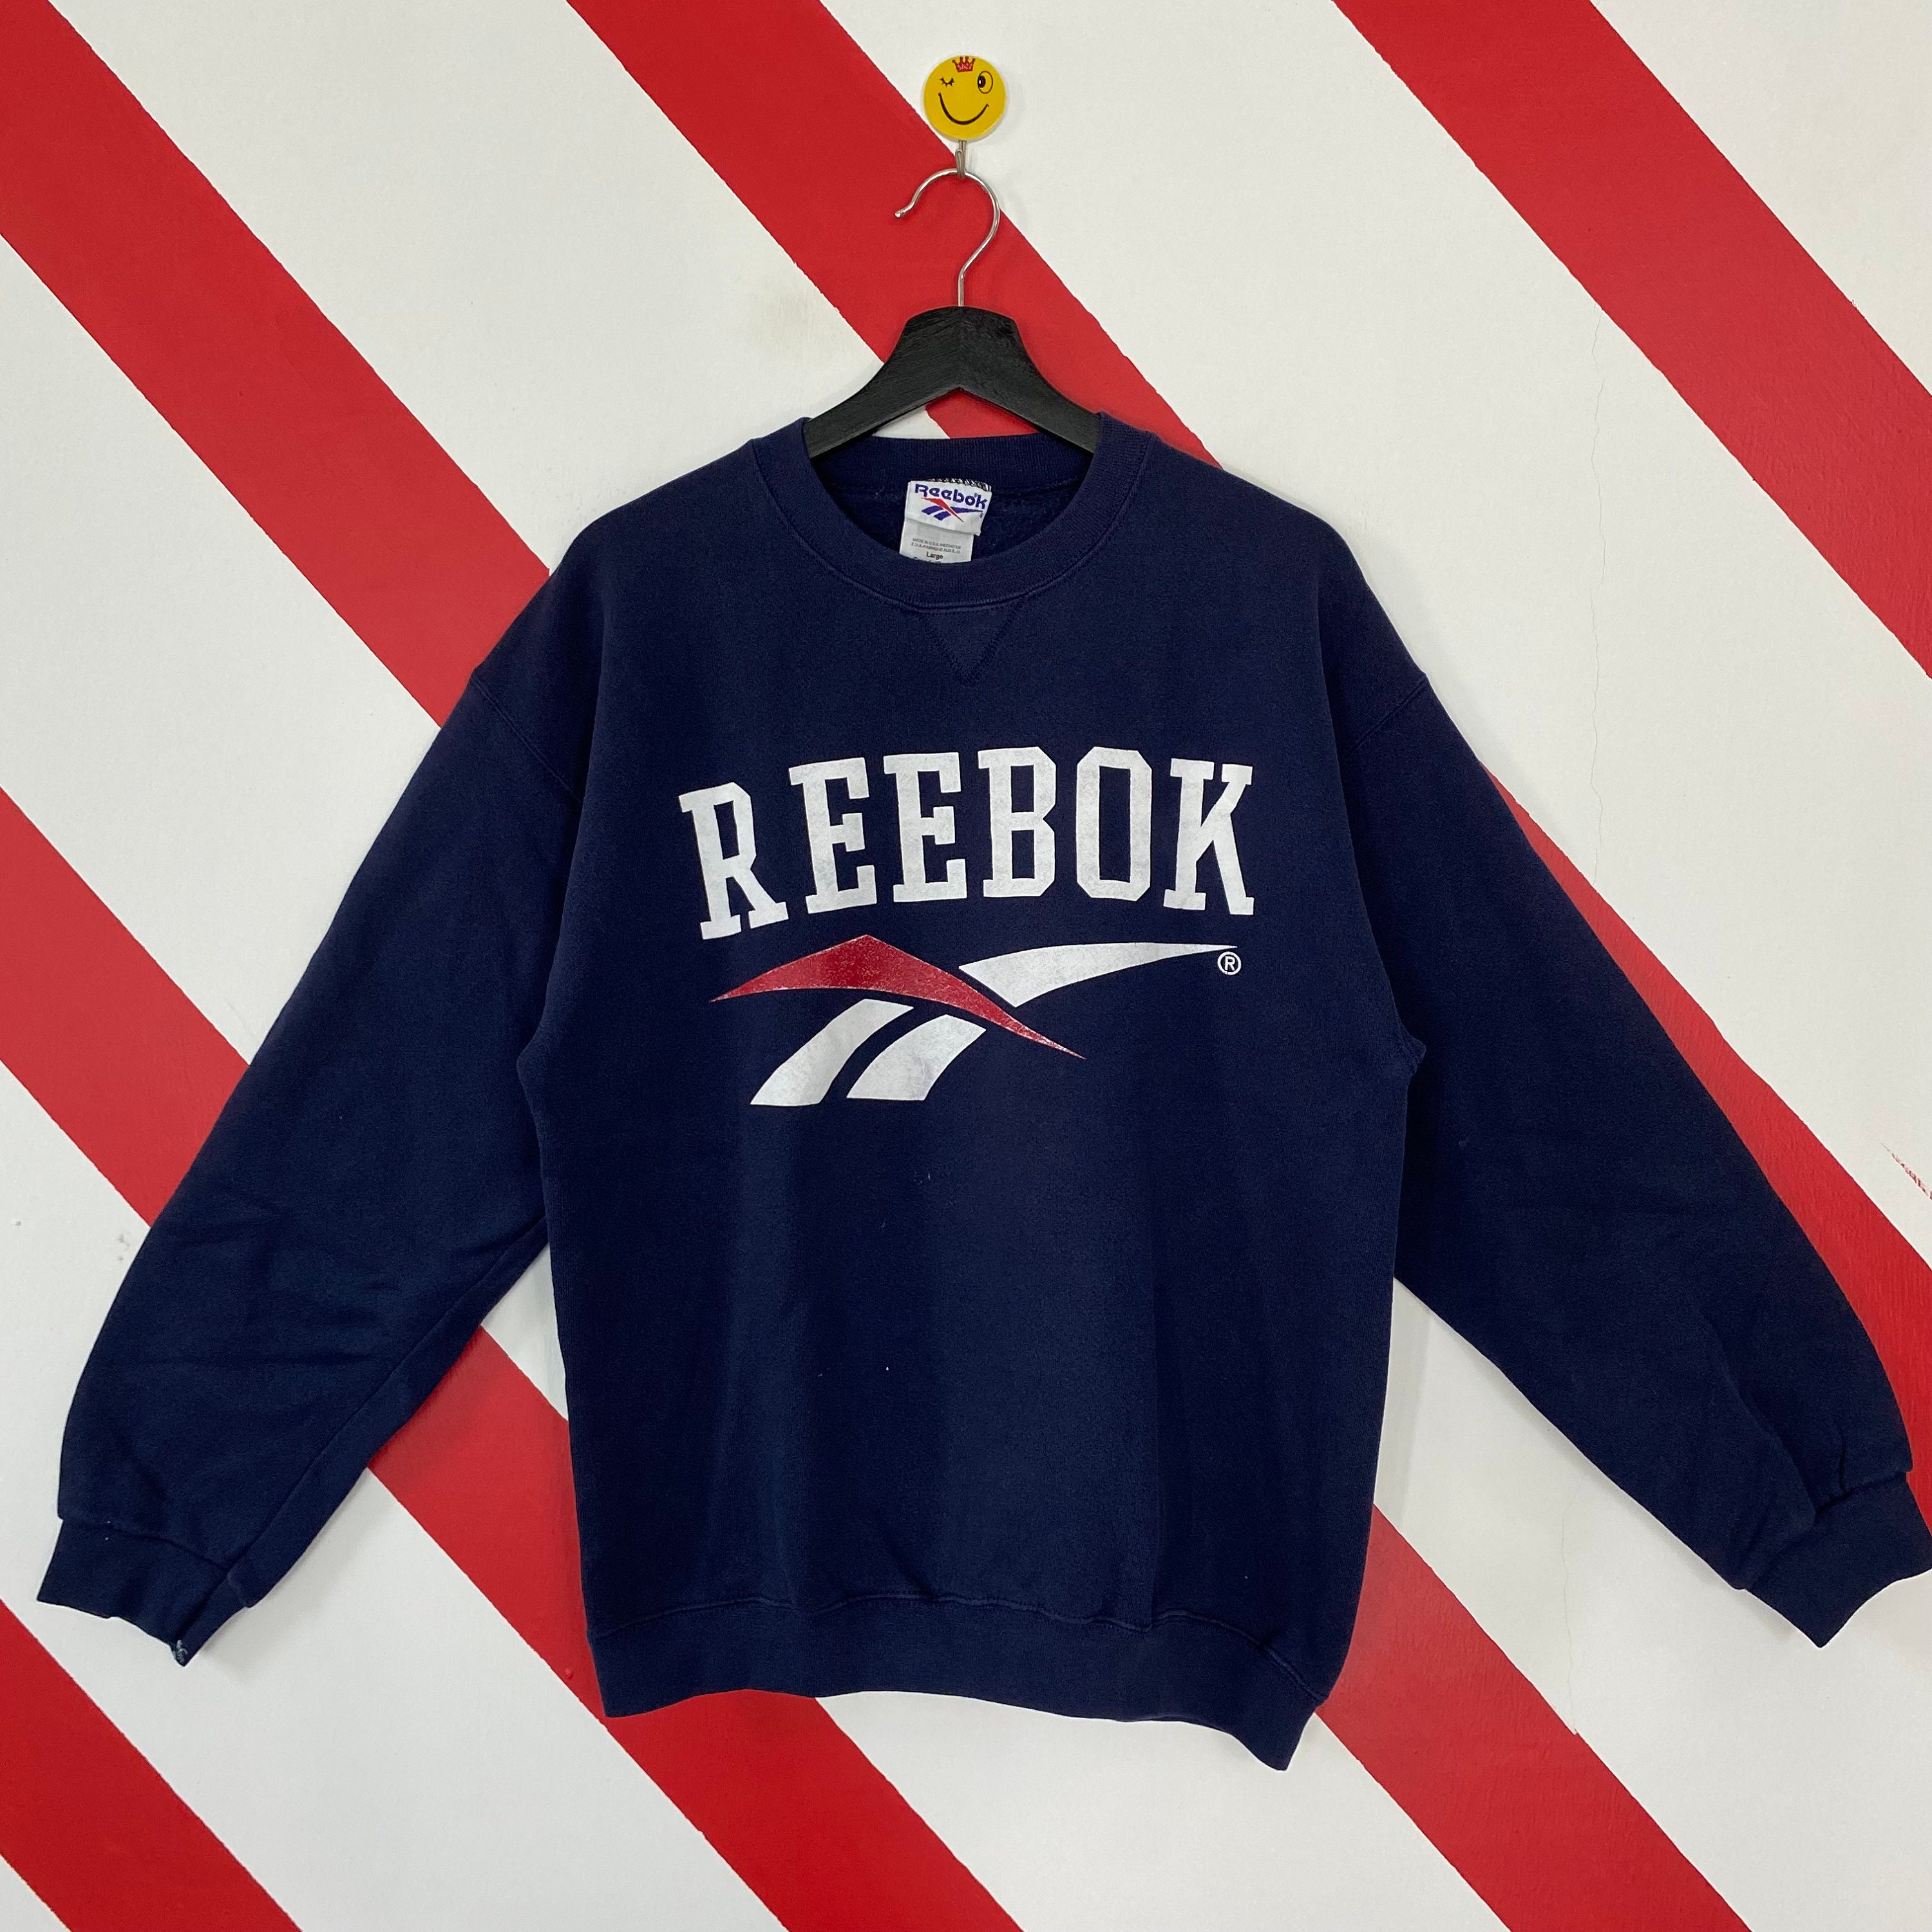 daar ben ik het mee eens mild Reis Vintage 90s Reebok Sweatshirt Reebok Crewneck Reebok Sweater - Etsy